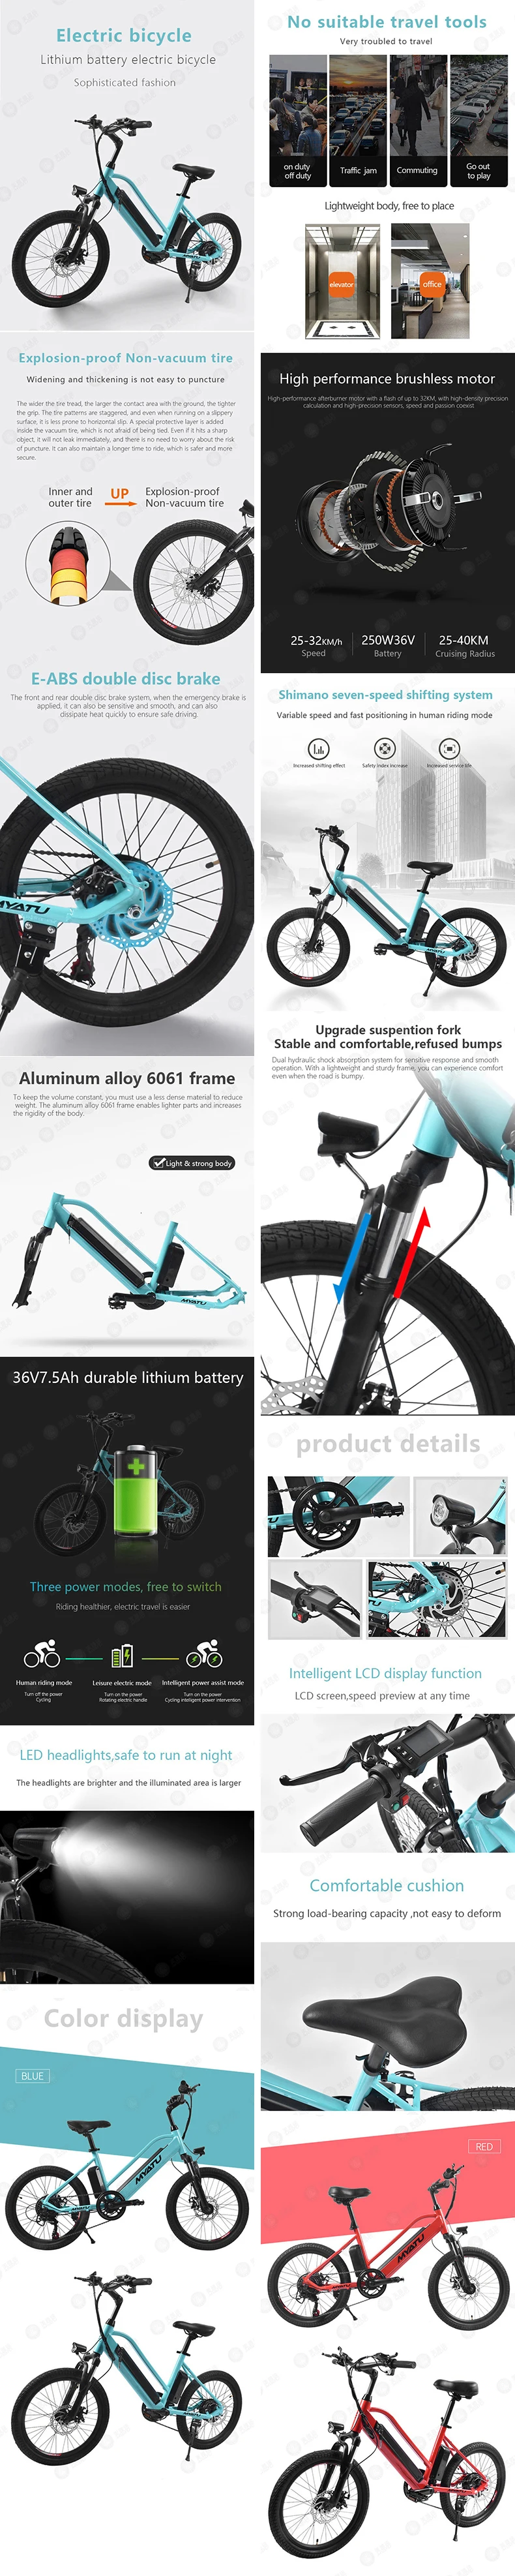 [MYATU] Электрический велосипед 20/26 дюймов Алюминий складной электрический велосипед мощный моттор 48 V/36 V Батарея горный велосипед, фара для электровелосипеда в пляжный велосипед